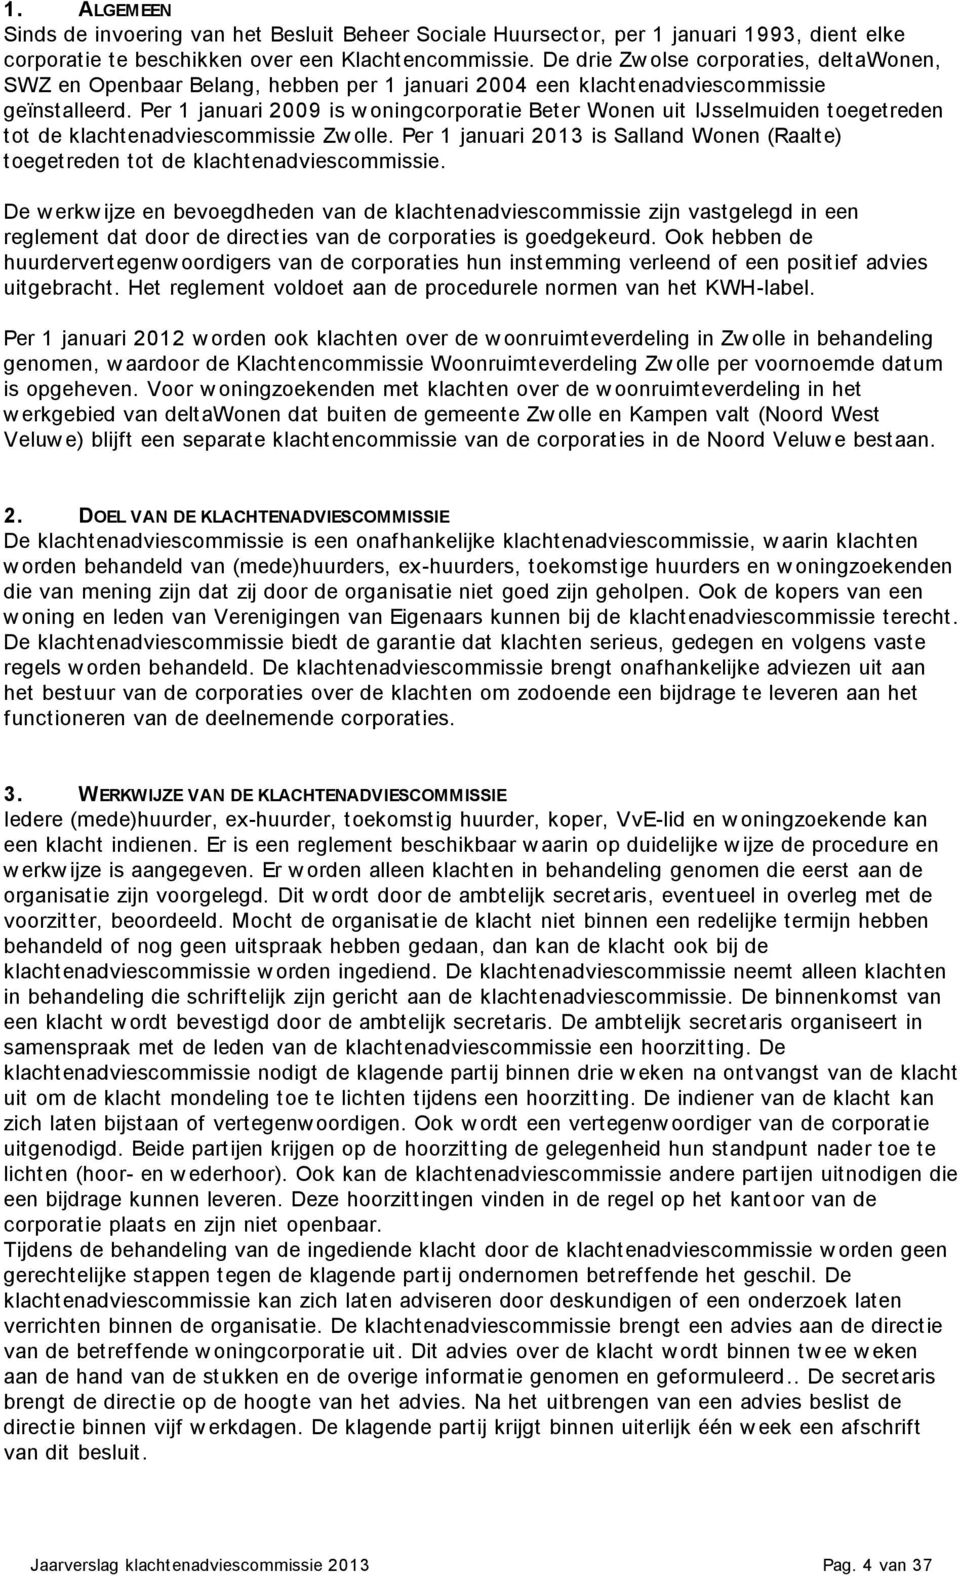 Per 1 januari 2009 is w oningcorporatie Beter Wonen uit IJsselmuiden toegetreden tot de klachtenadviescommissie Zw olle.